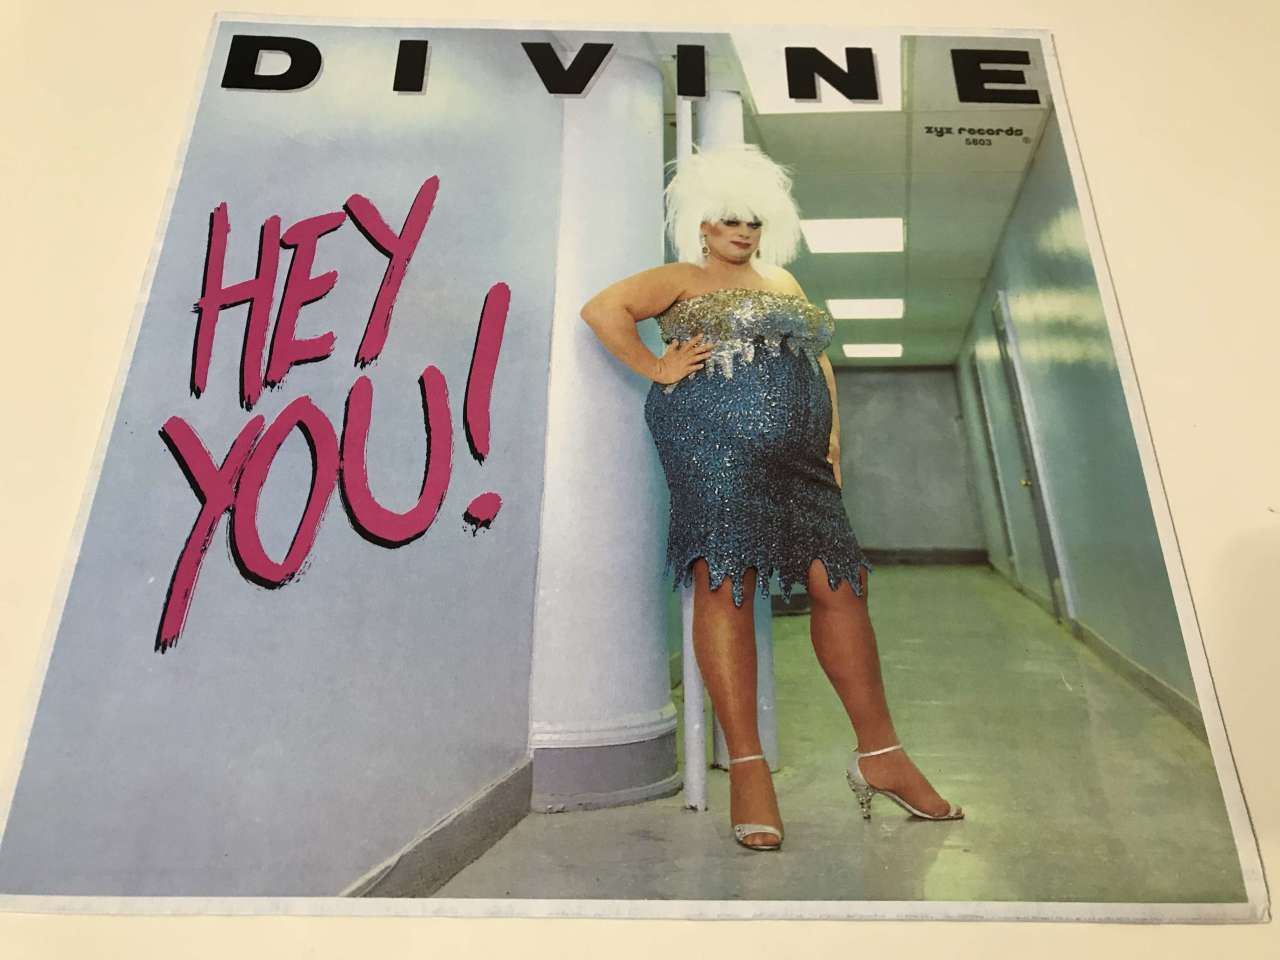 Divine – Hey You!